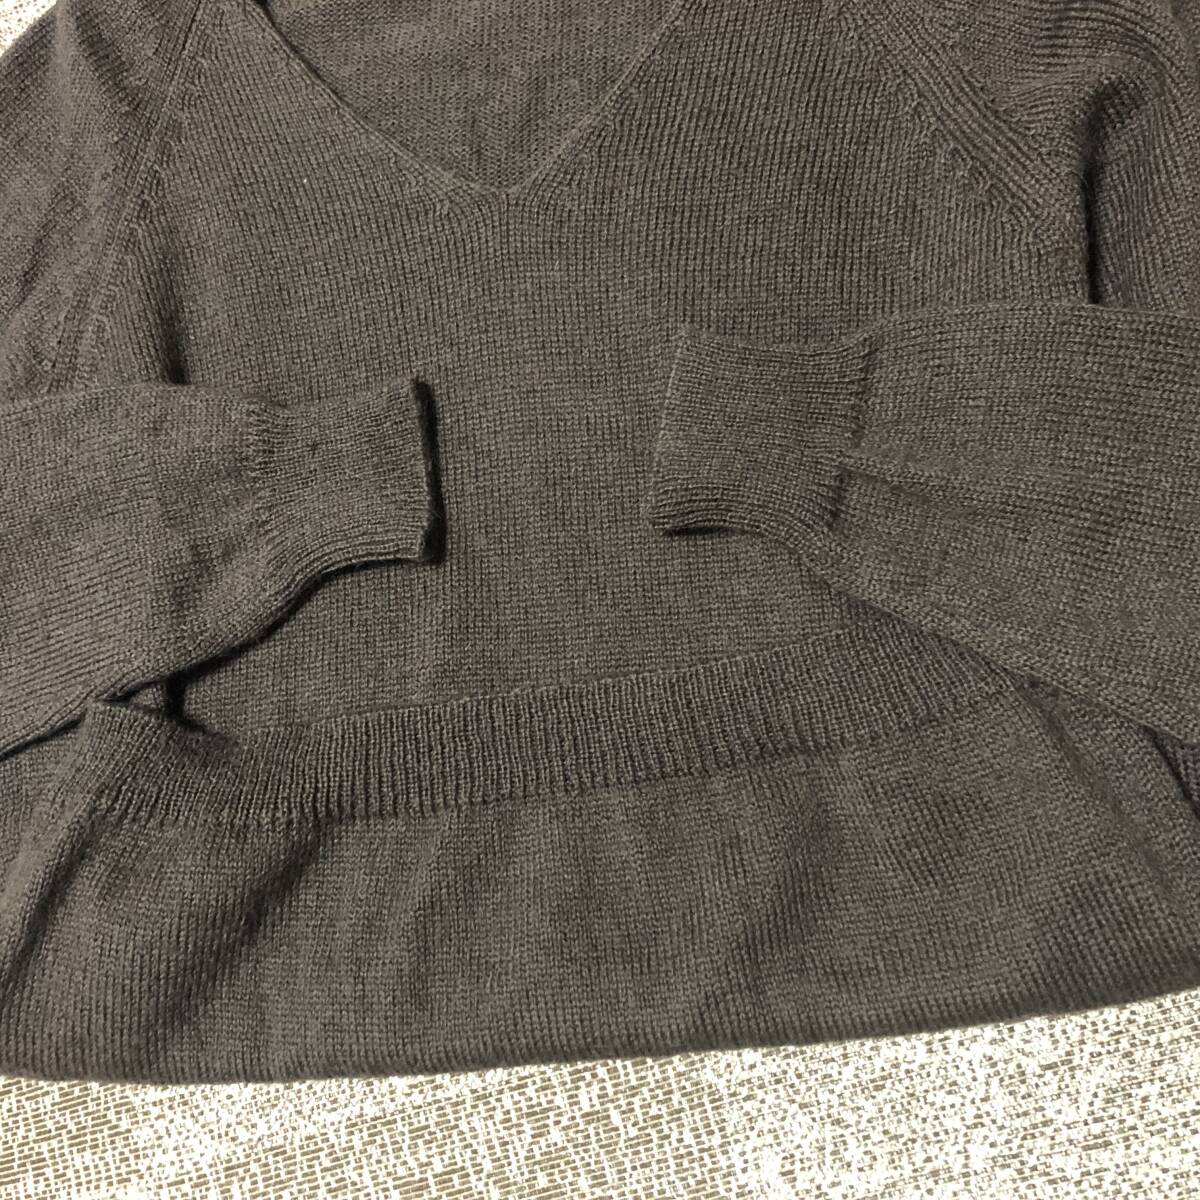 TRICOT WIM NEELS トリコ ウィムニールス モヘヤ混紡セーター ブラウン サイズ46 イタリア製